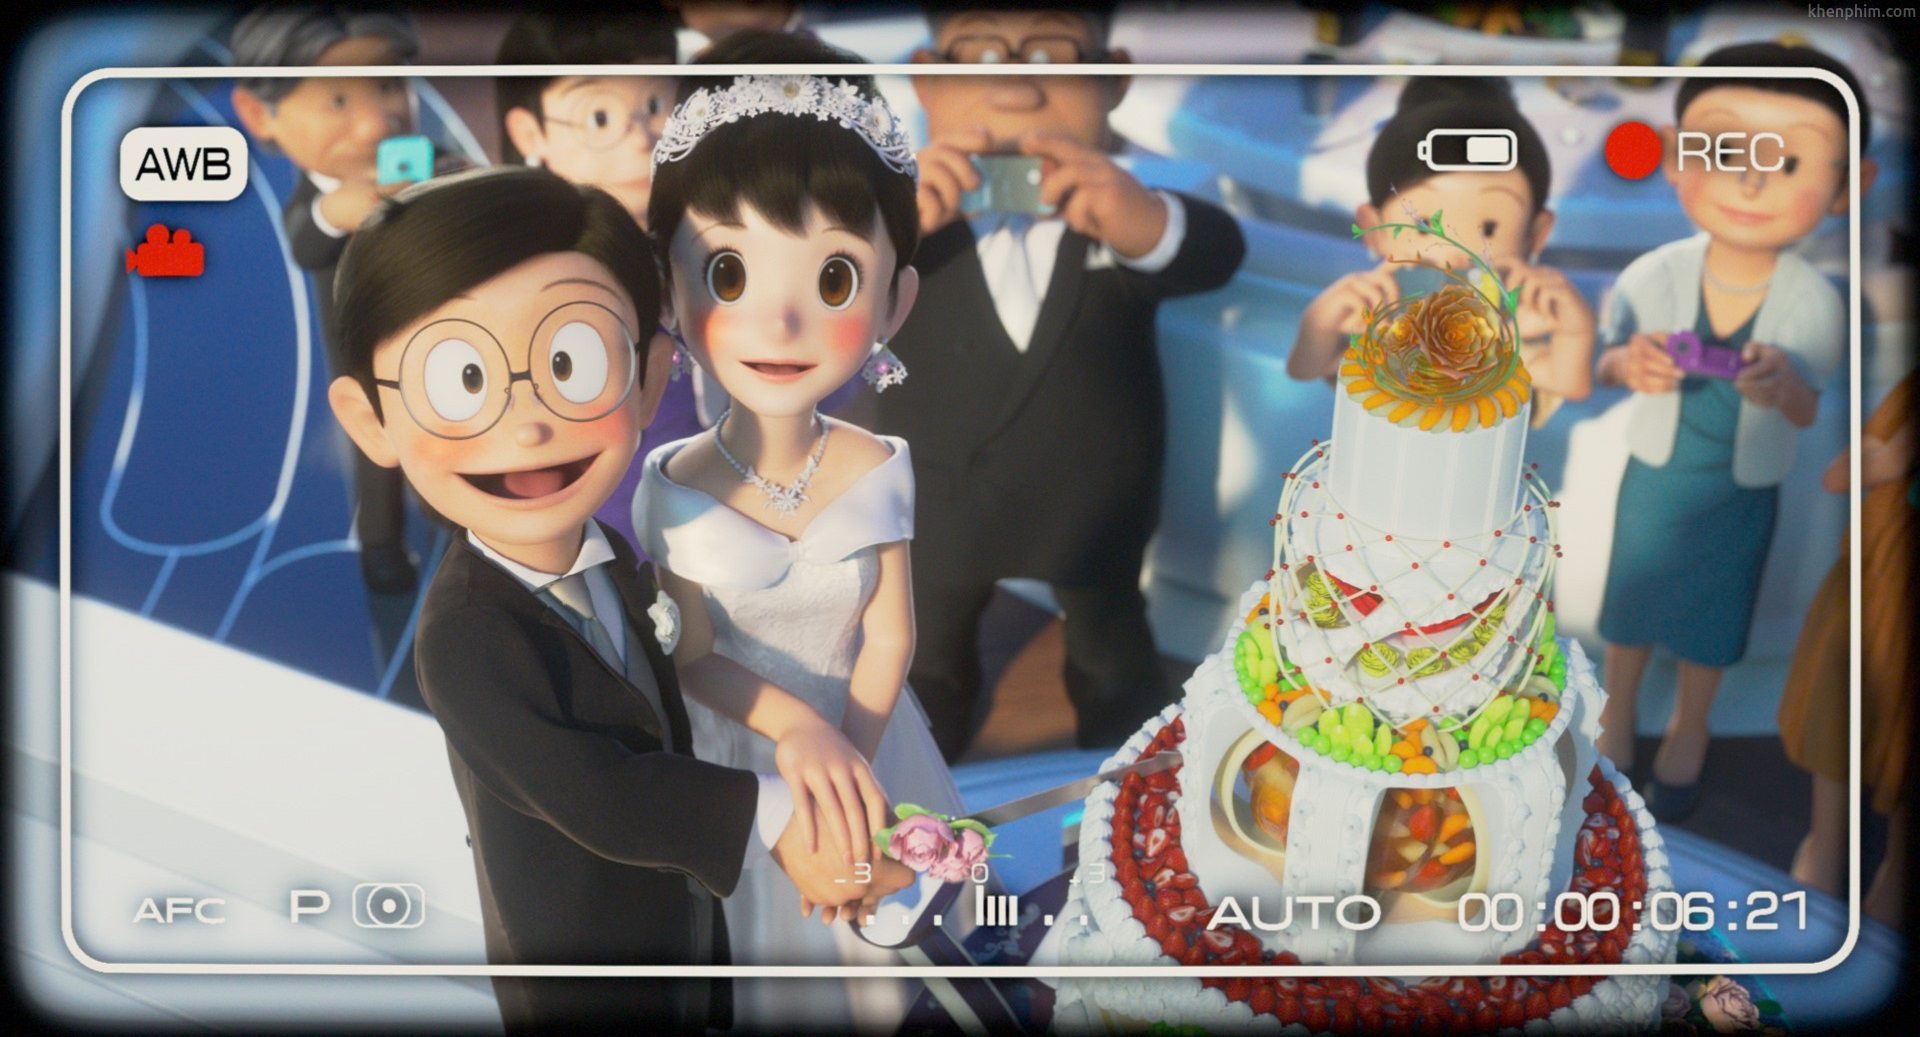 Review phim Doraemon: Stand By Me 2: Nobita thực sự hạnh phúc ở tương lai?